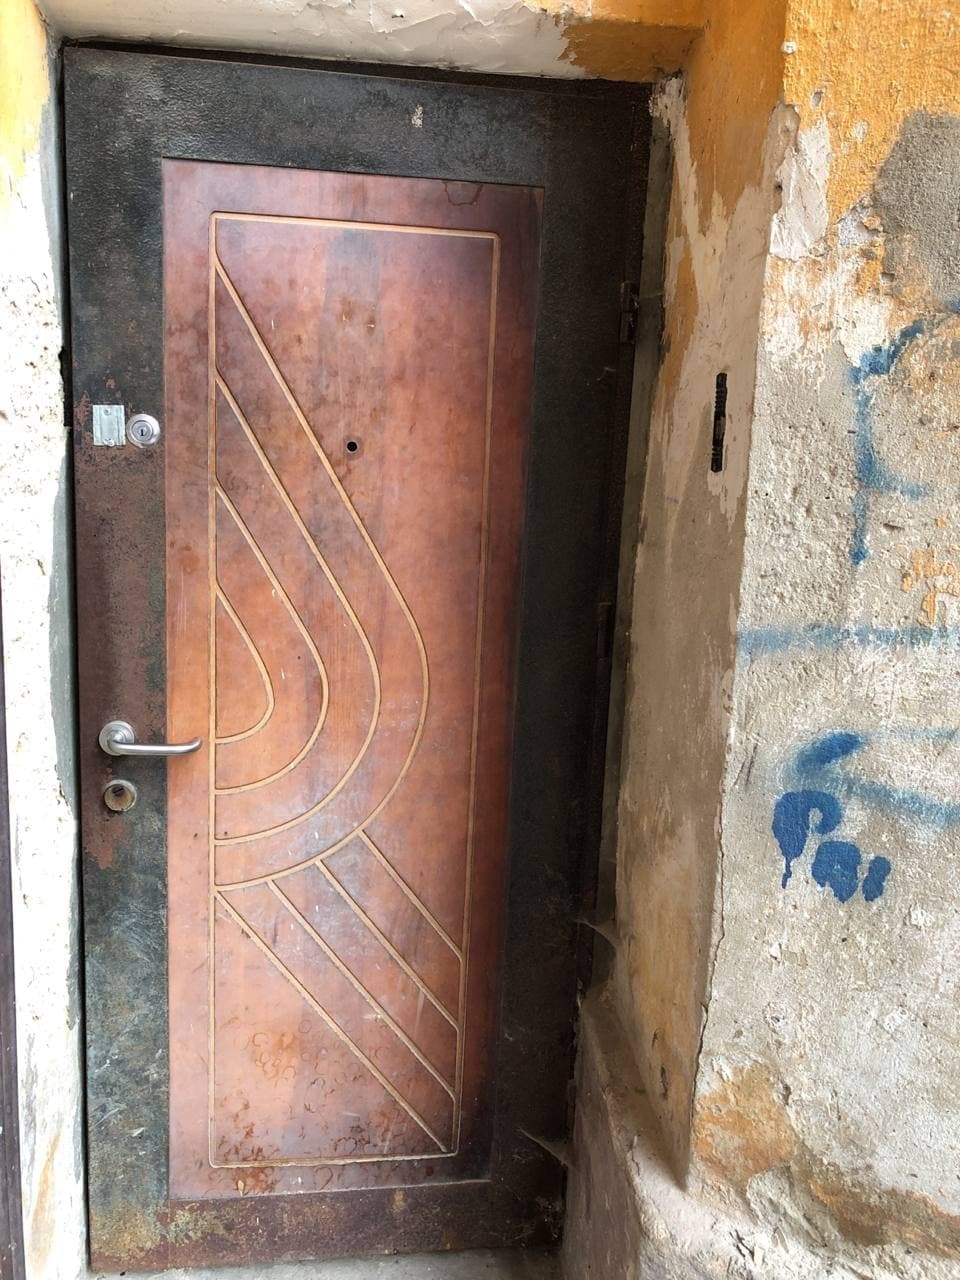 В Тернополе продают квартиру, вход в которую замурован (фото)